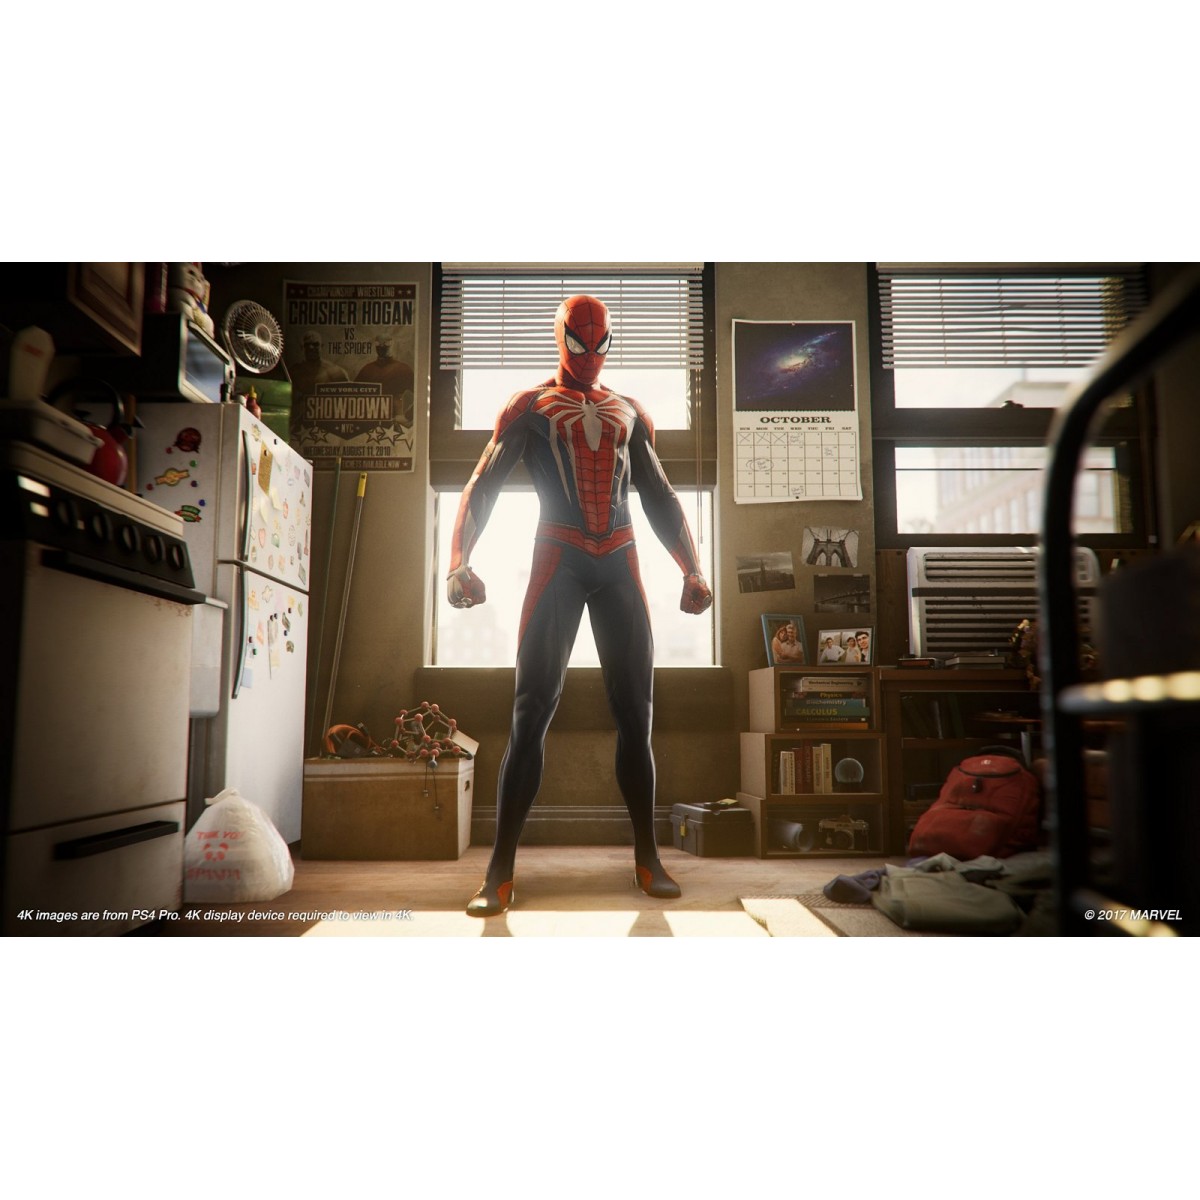 Jogo Marvel's Spider-Man GOTY, PS4